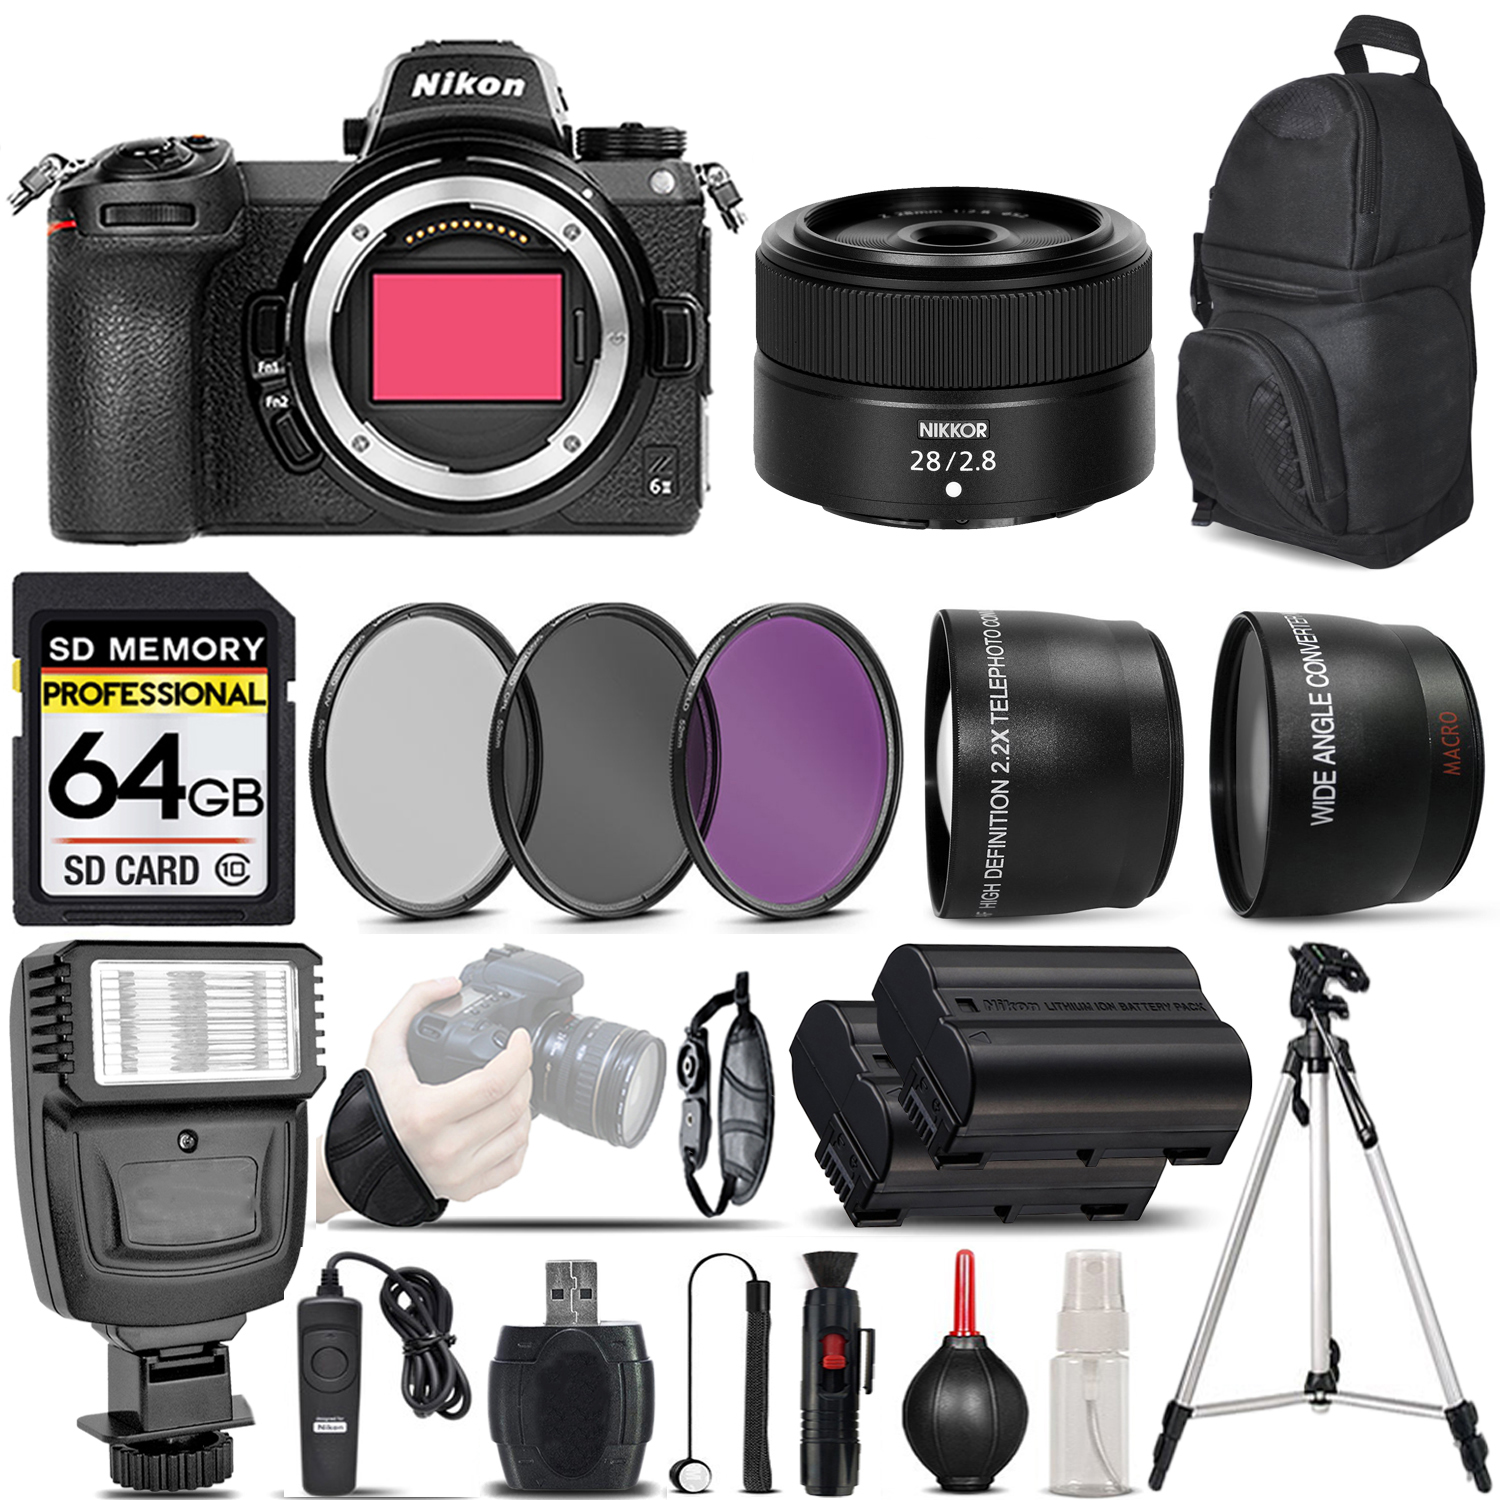 Z6 II Digital Camera + 28mm f/2.8 Lens + Flash - 64GB Basic Bundle *FREE SHIPPING*